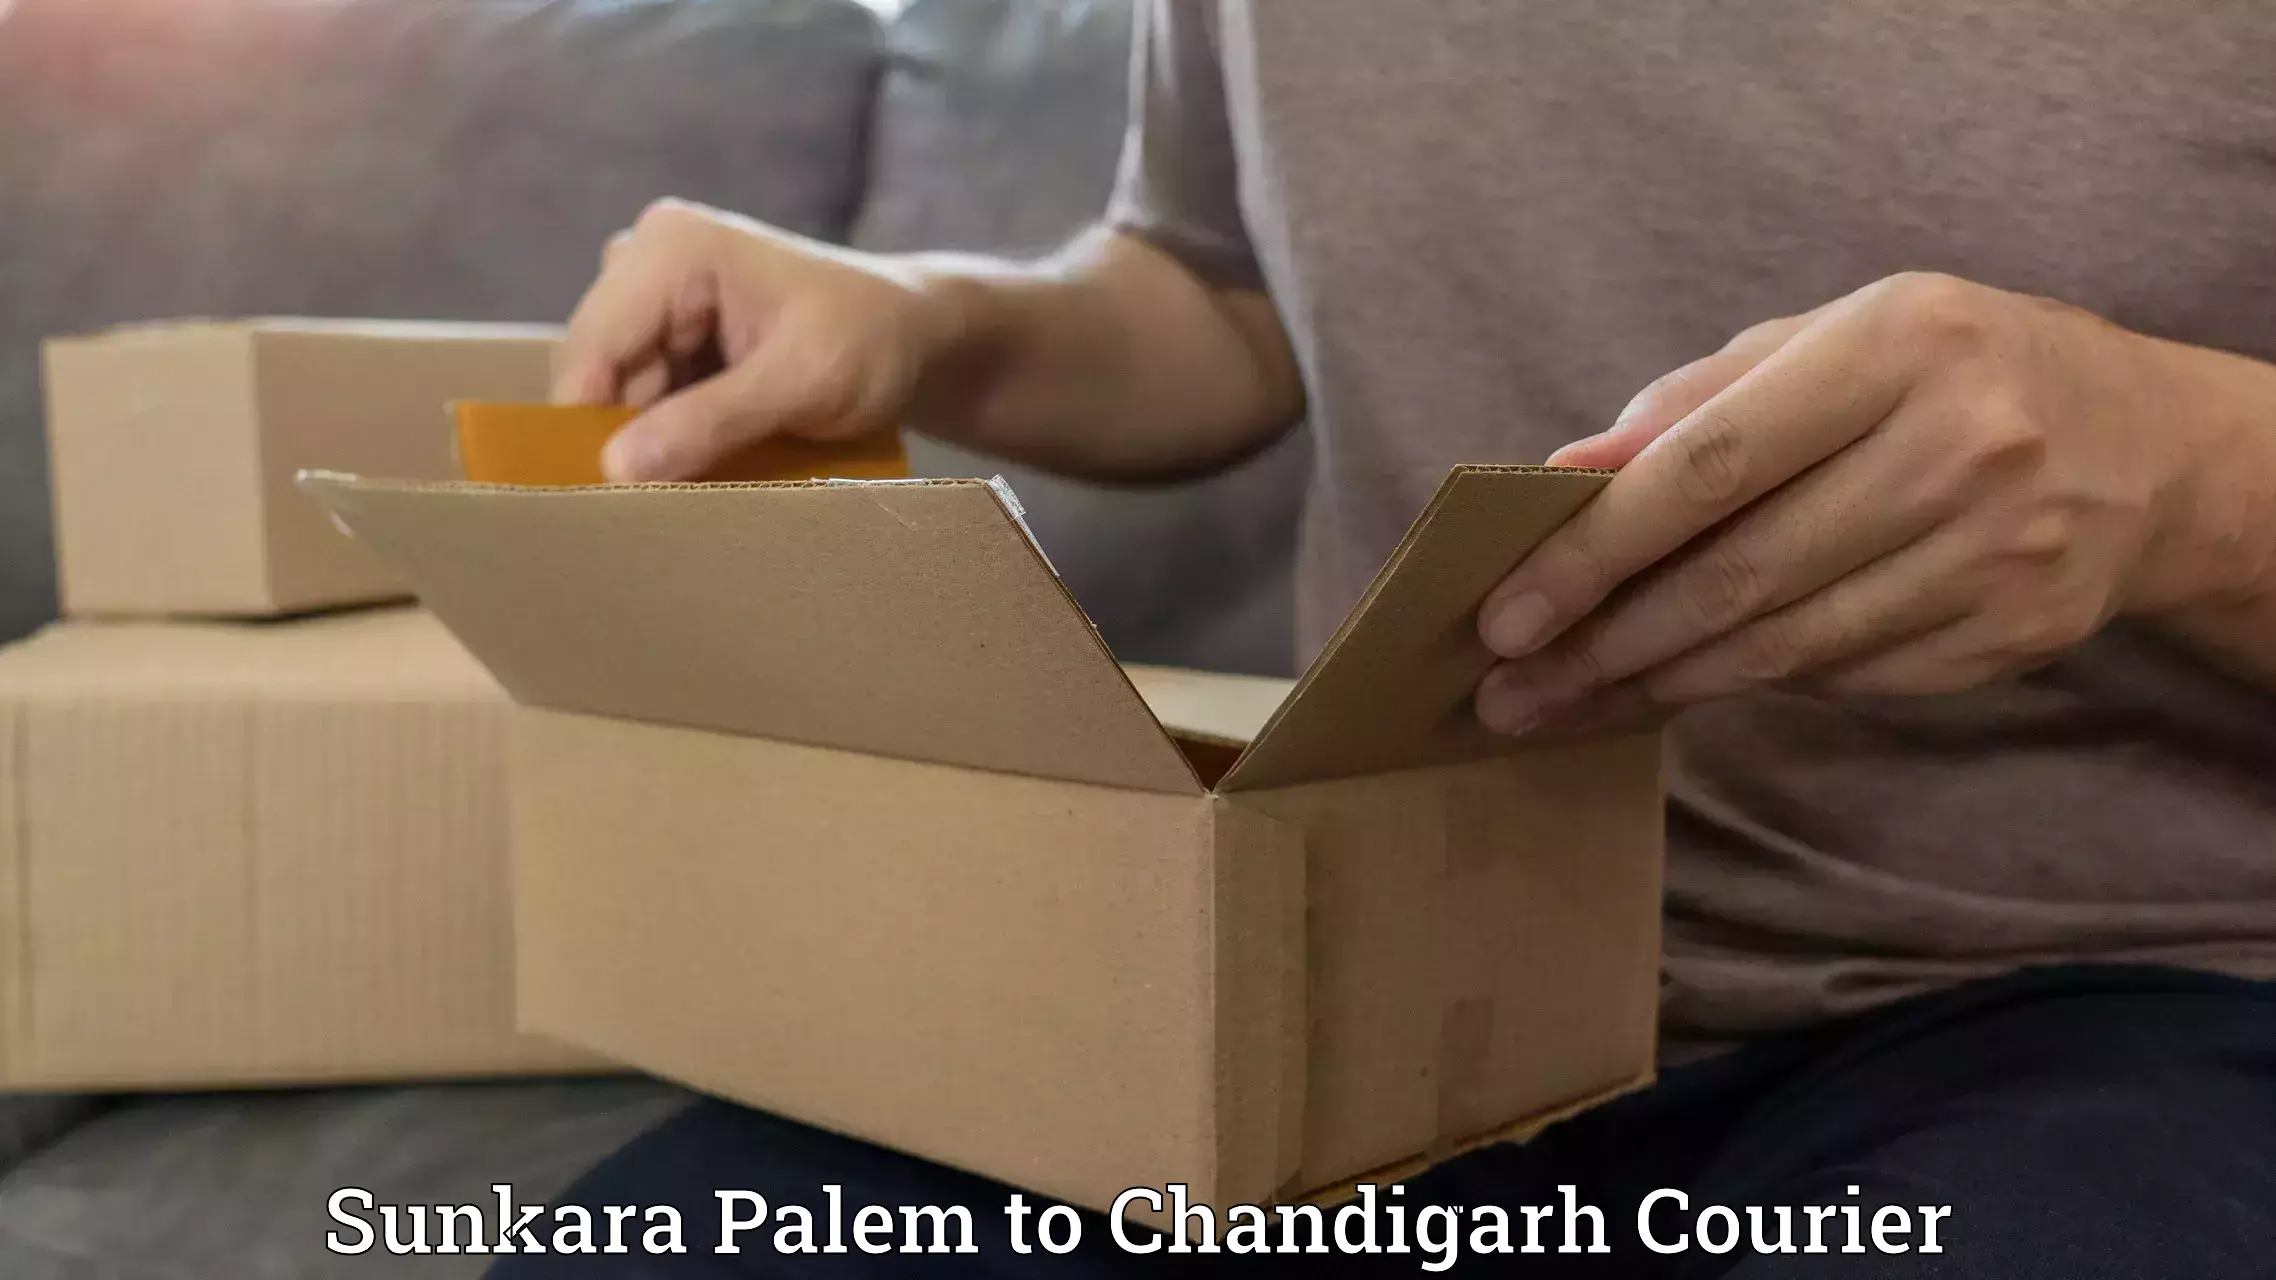 Efficient parcel service Sunkara Palem to Chandigarh